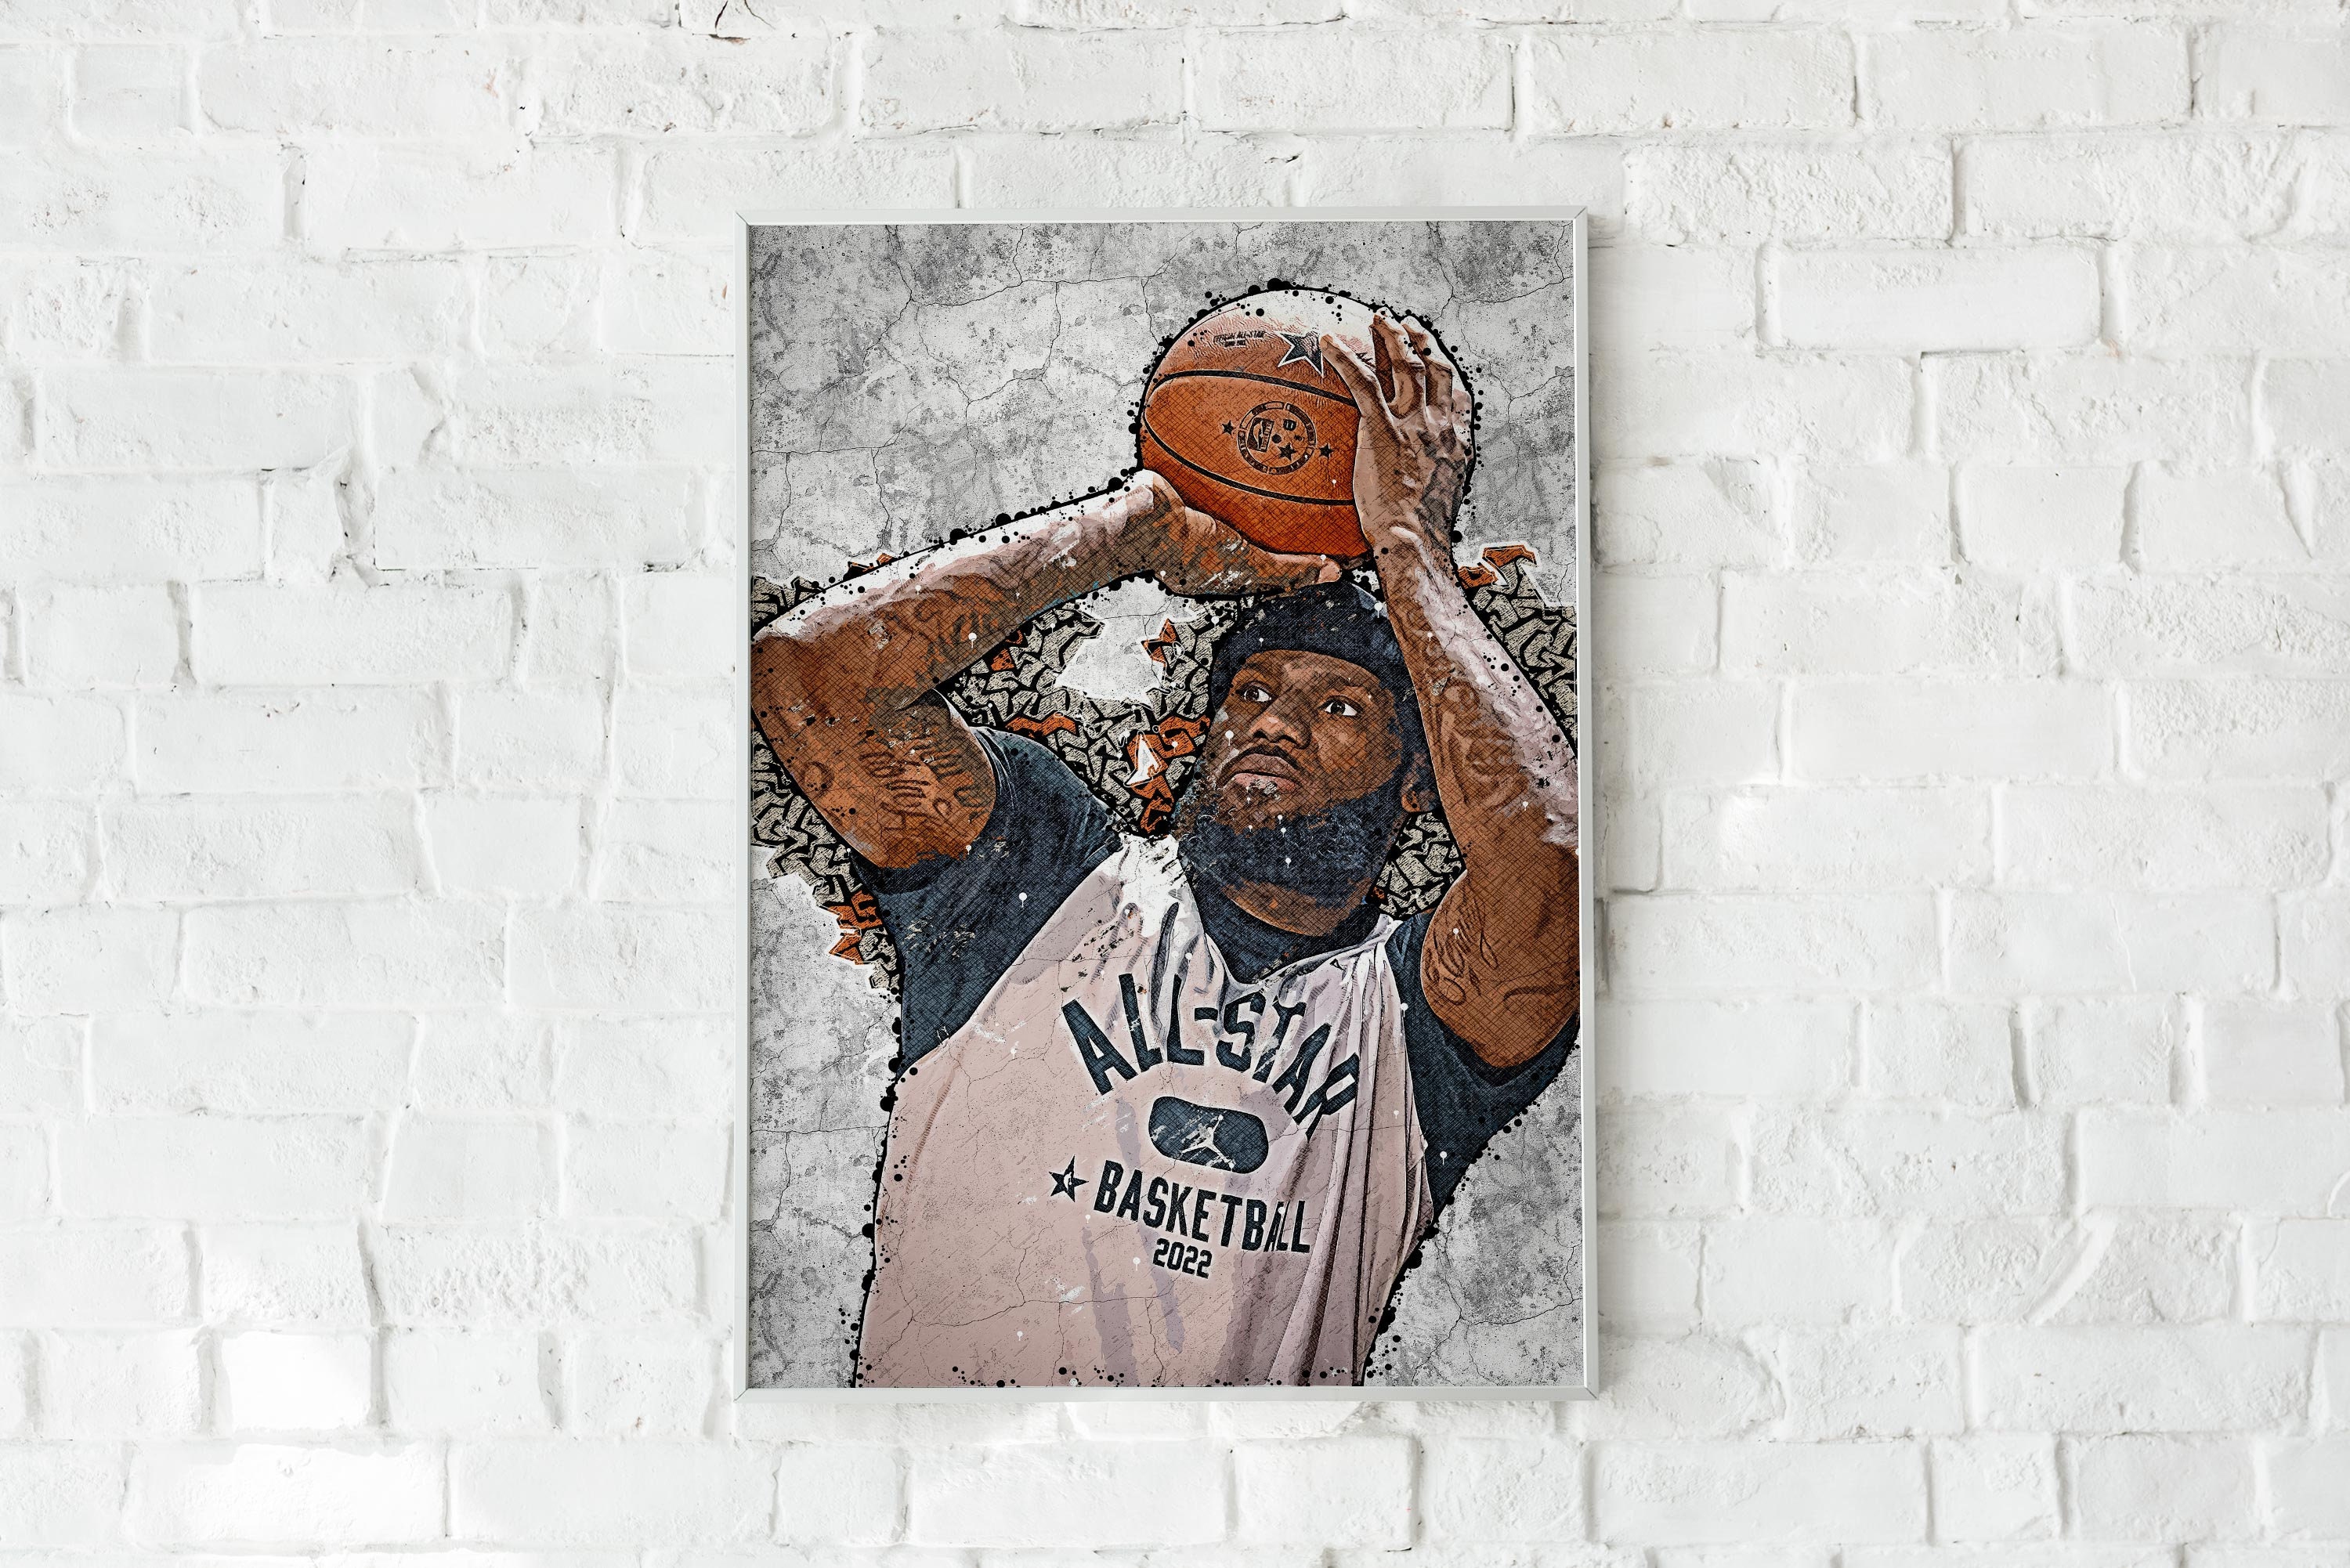 Zach Lavine chicago bulls NBA basketball graphic design signature